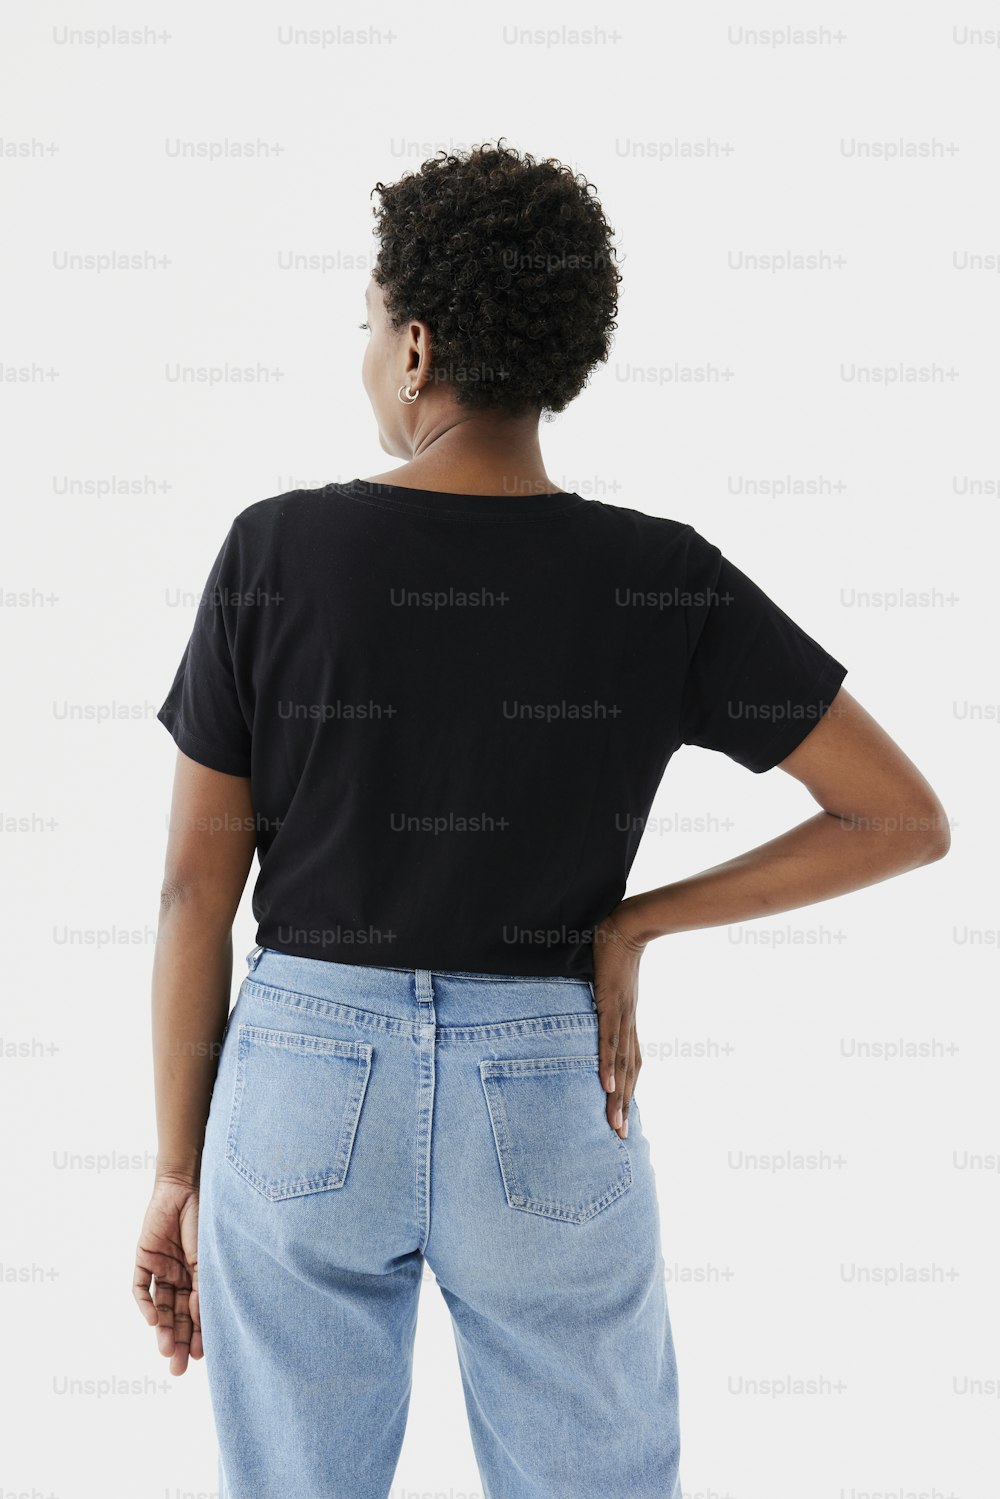 Una mujer con camisa negra y jeans